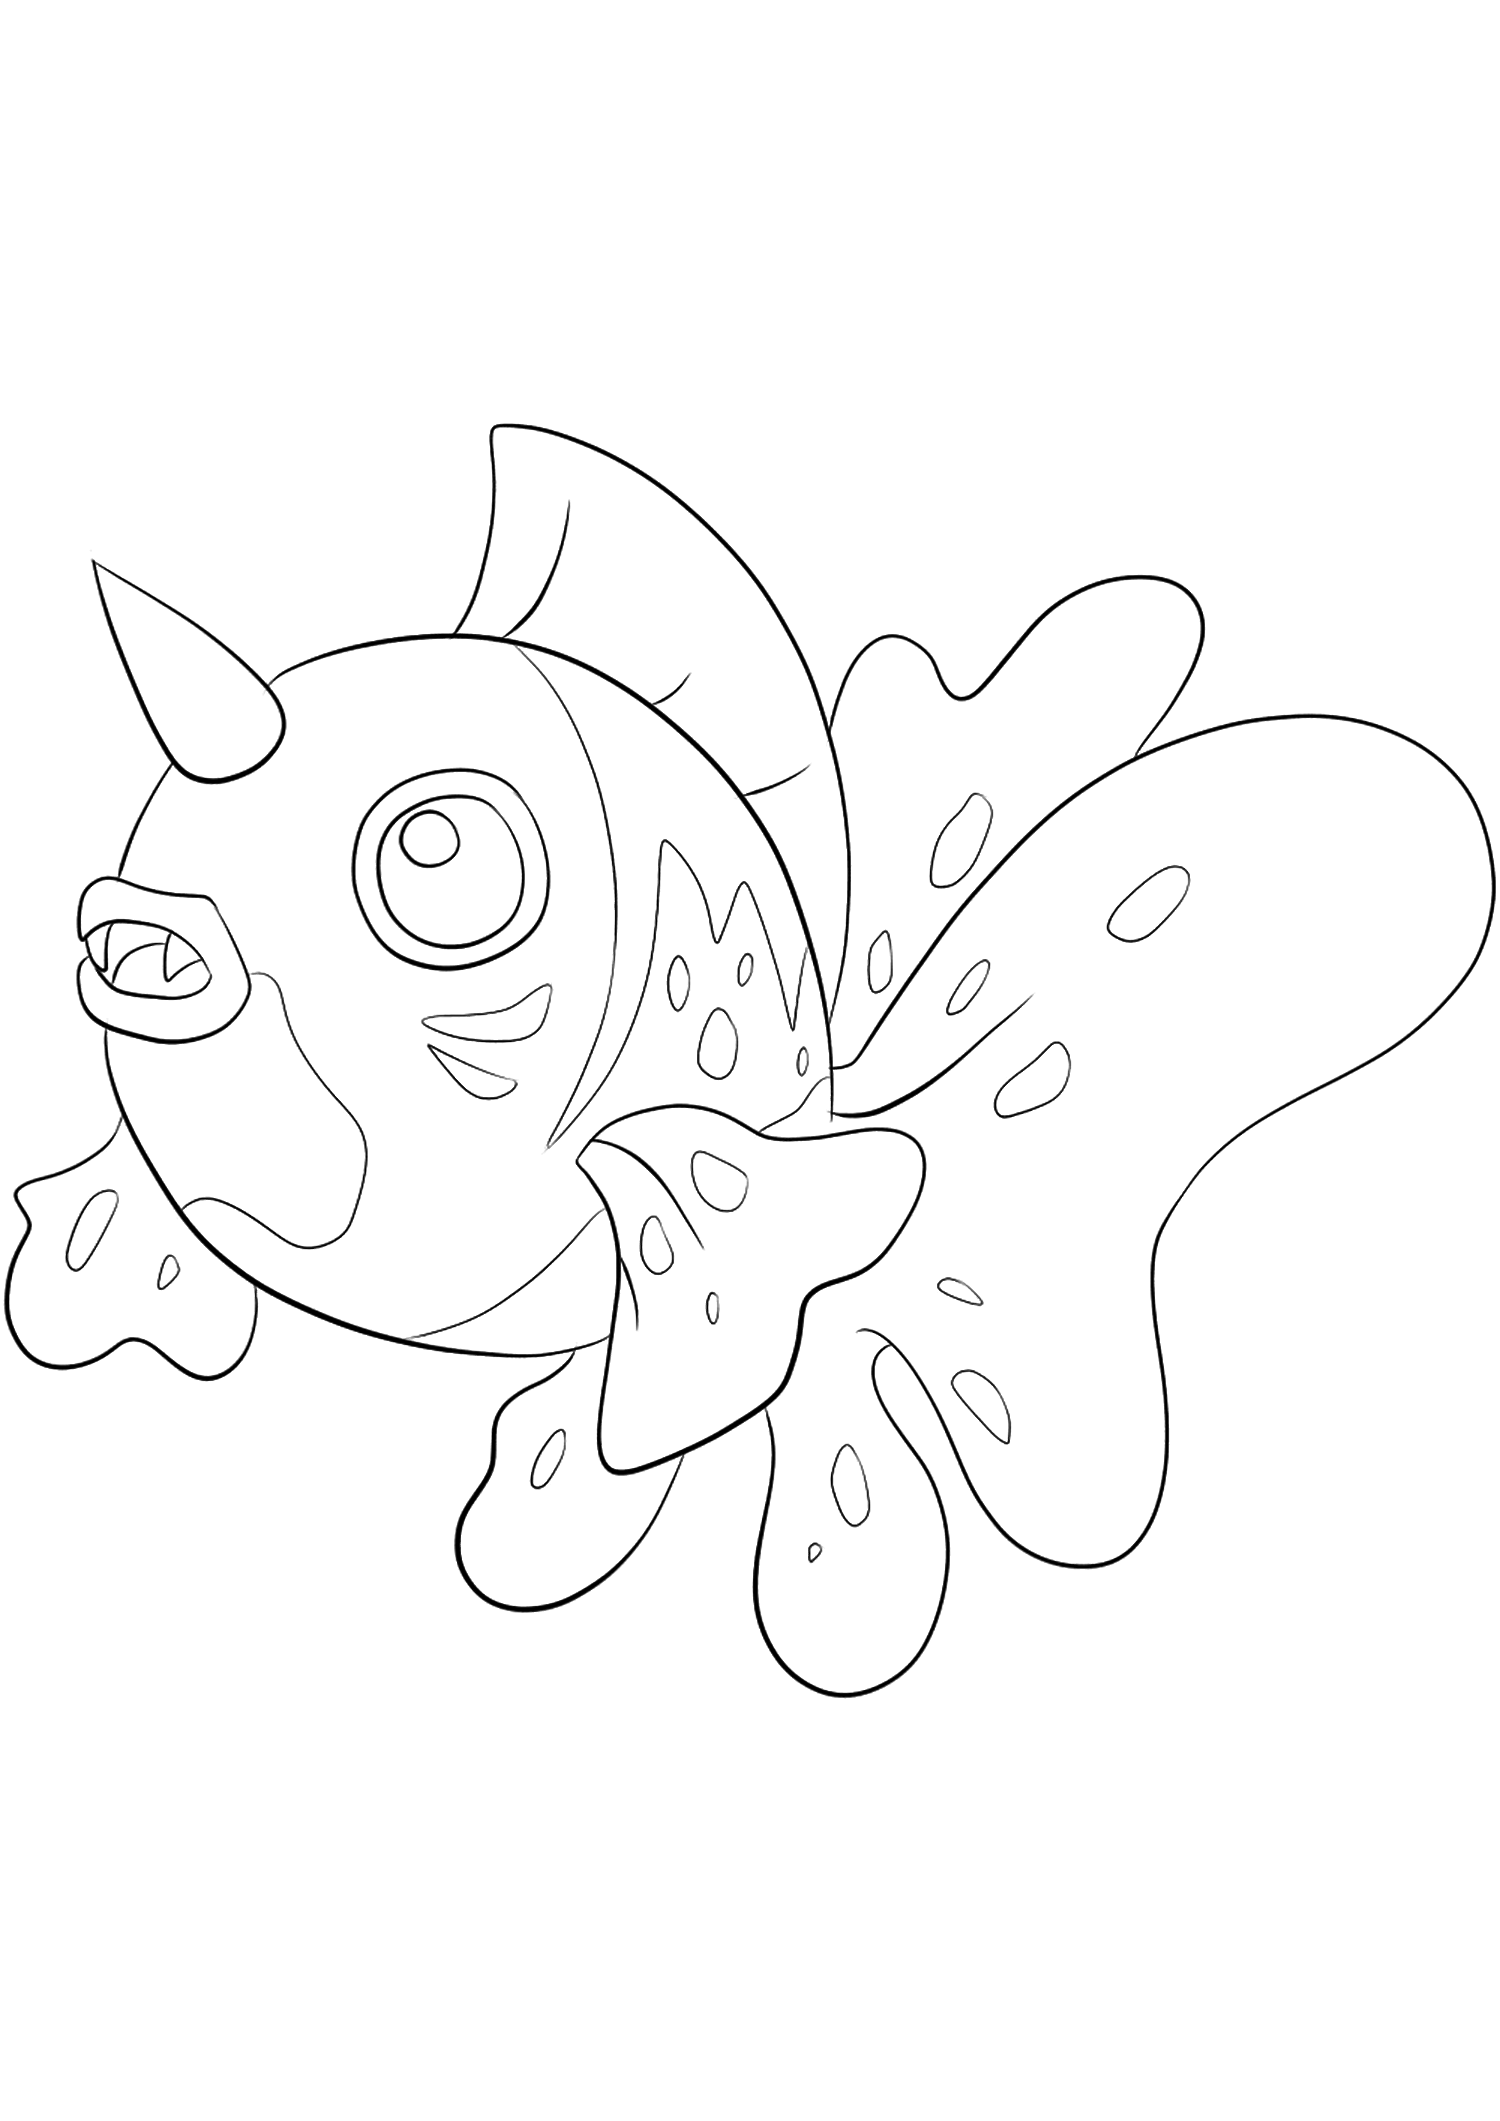 Poissoroy (No.119). Coloriage de Poissoroy (Seaking), Pokémon de Génération I, de type : Eau